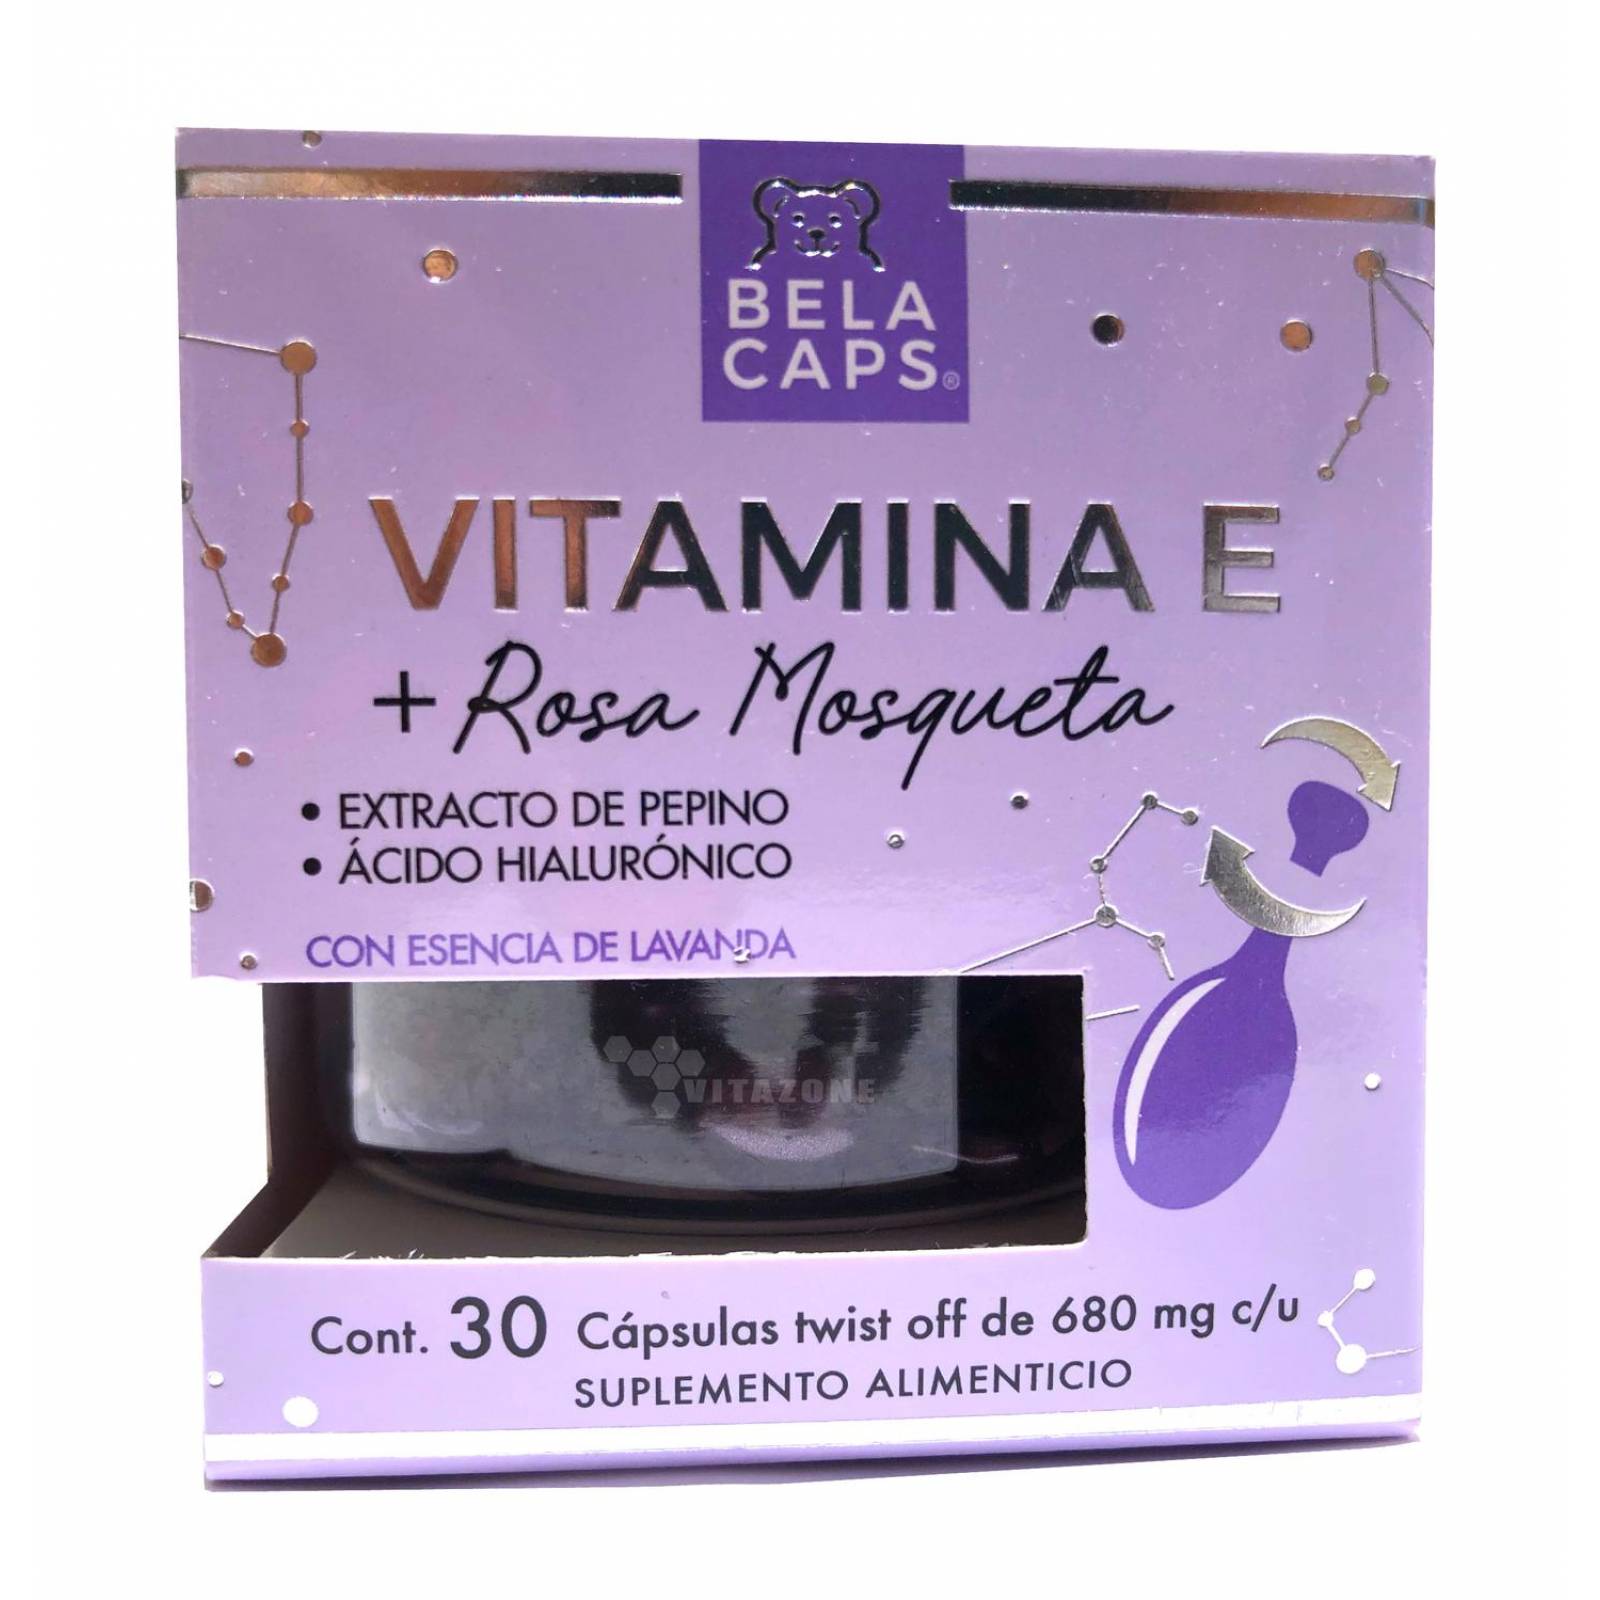 Vitamina E Rosa Mosqueta Serum 30 cápsulas faciales Belacaps 